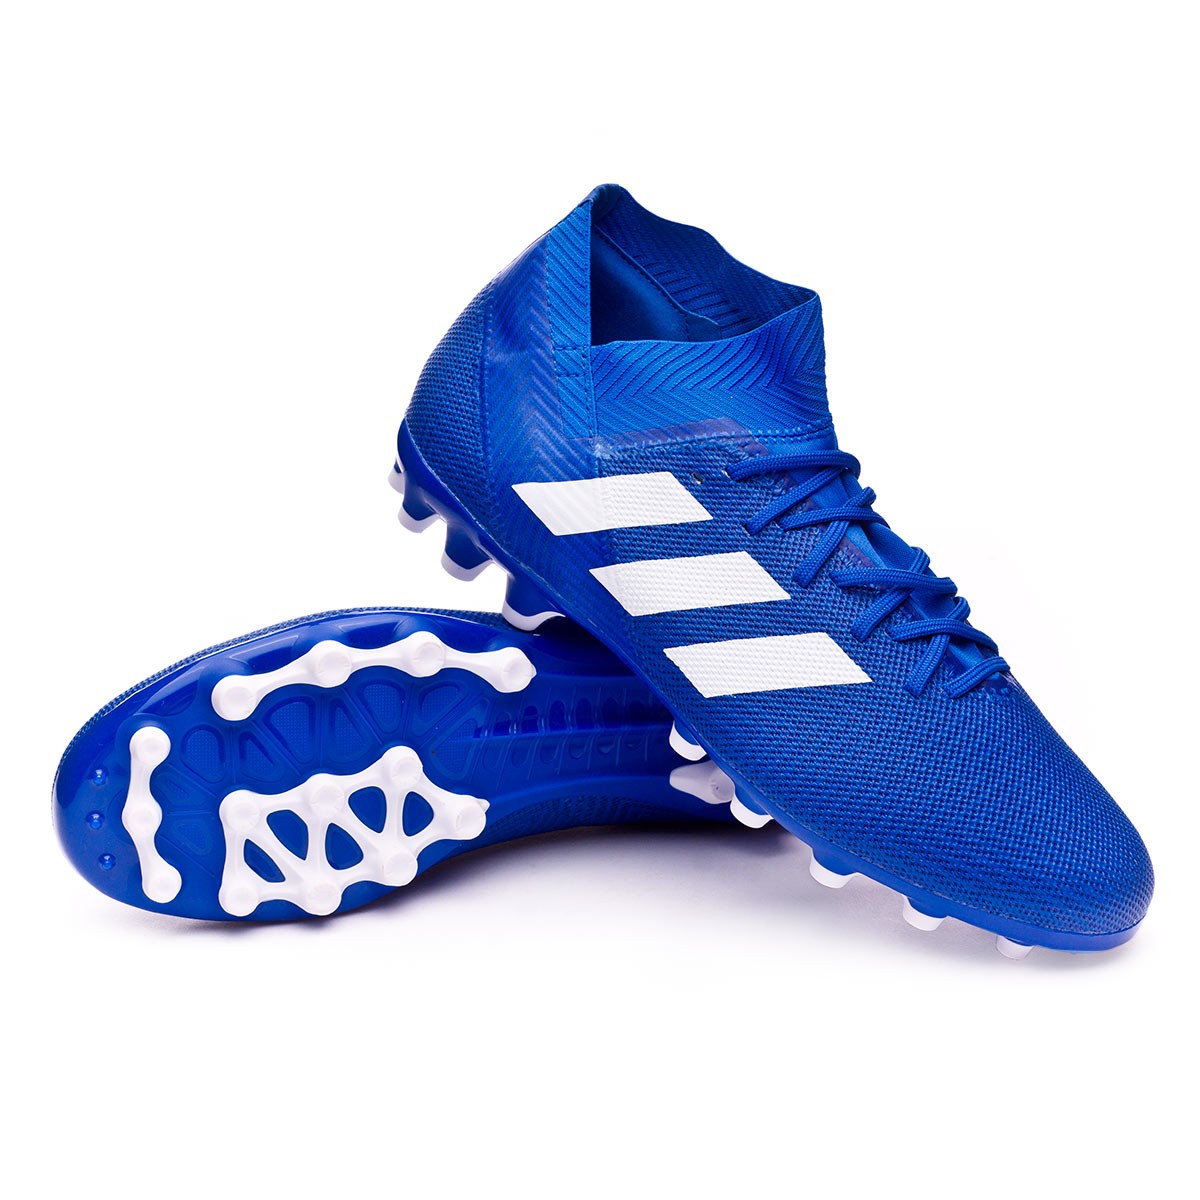 Football Boots adidas Nemeziz 18.3 AG 